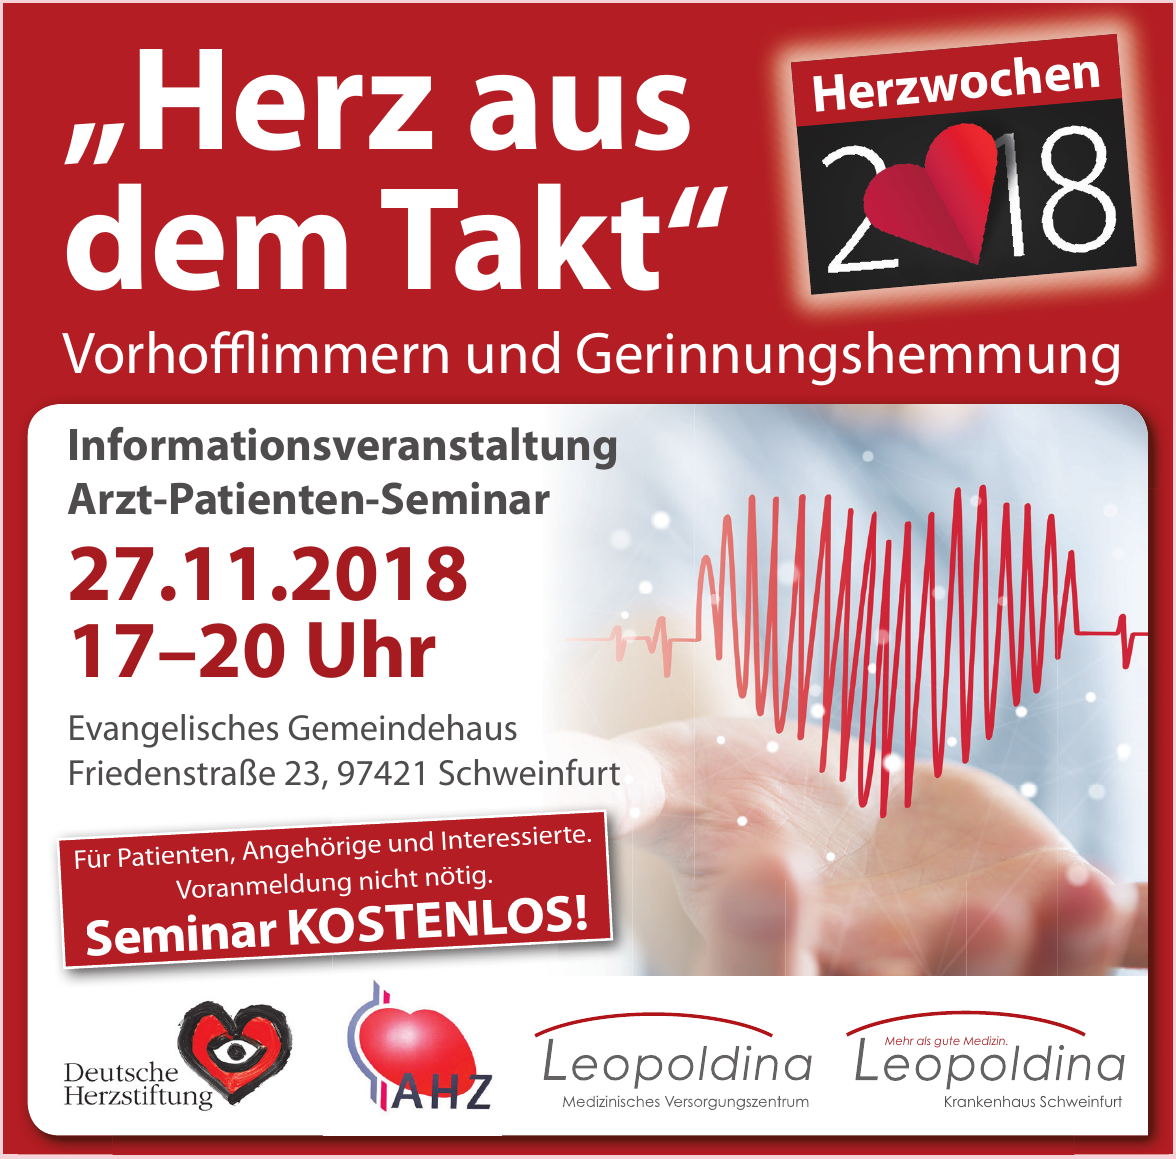 Herzwochen 2018 - Evangelisches Gemeindehaus